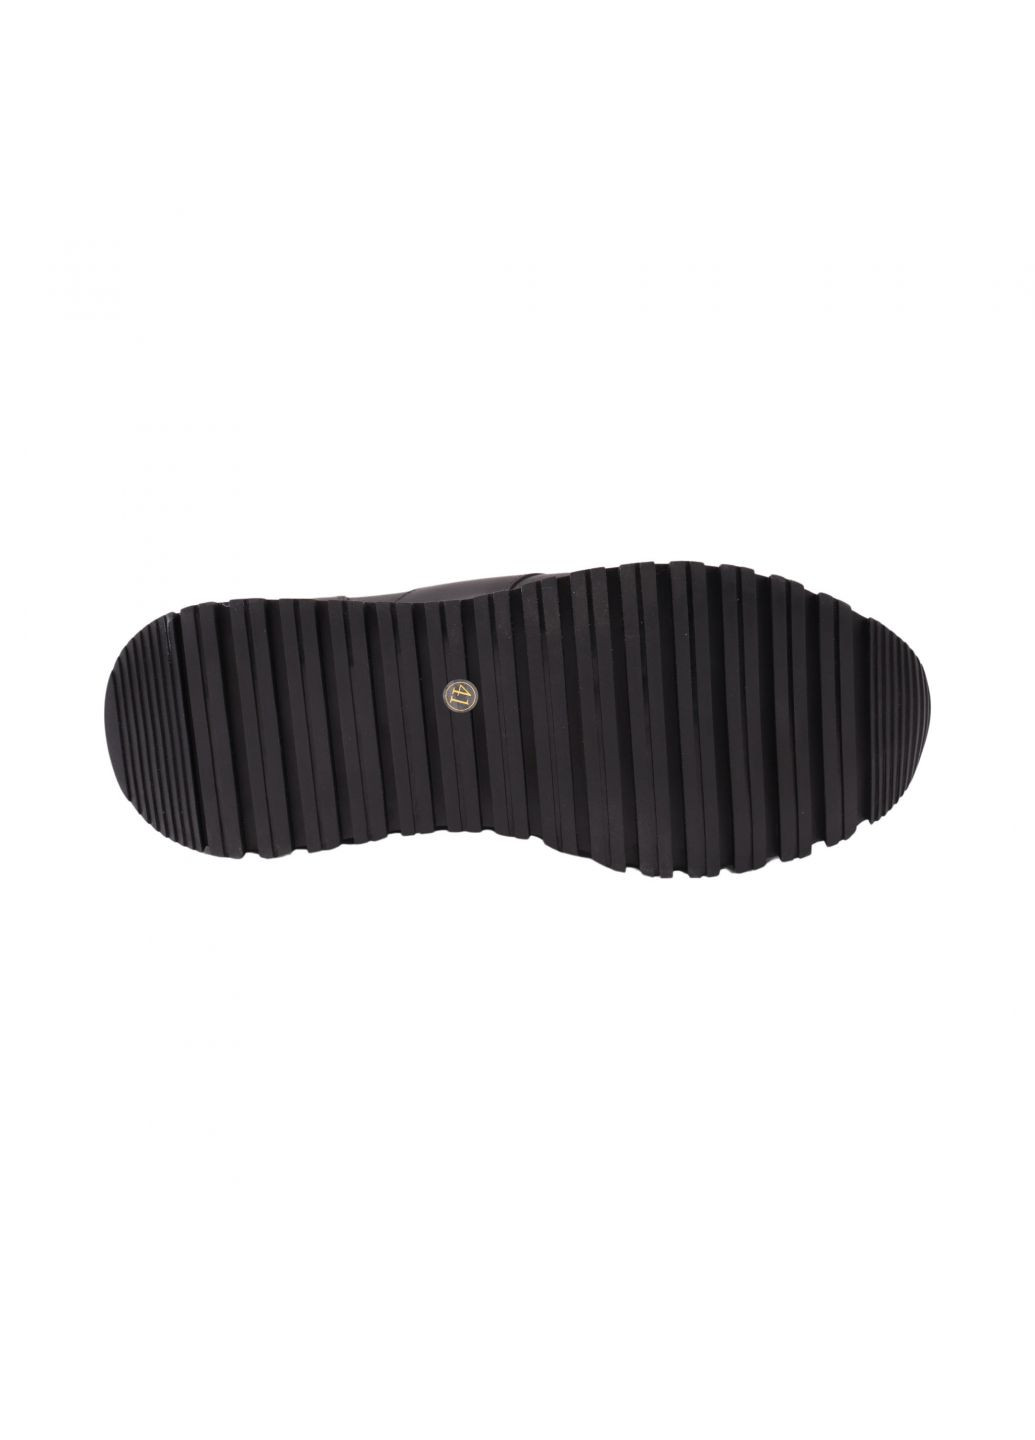 Черные кроссовки мужские черные натуральная кожа Brooman 996-23DTS